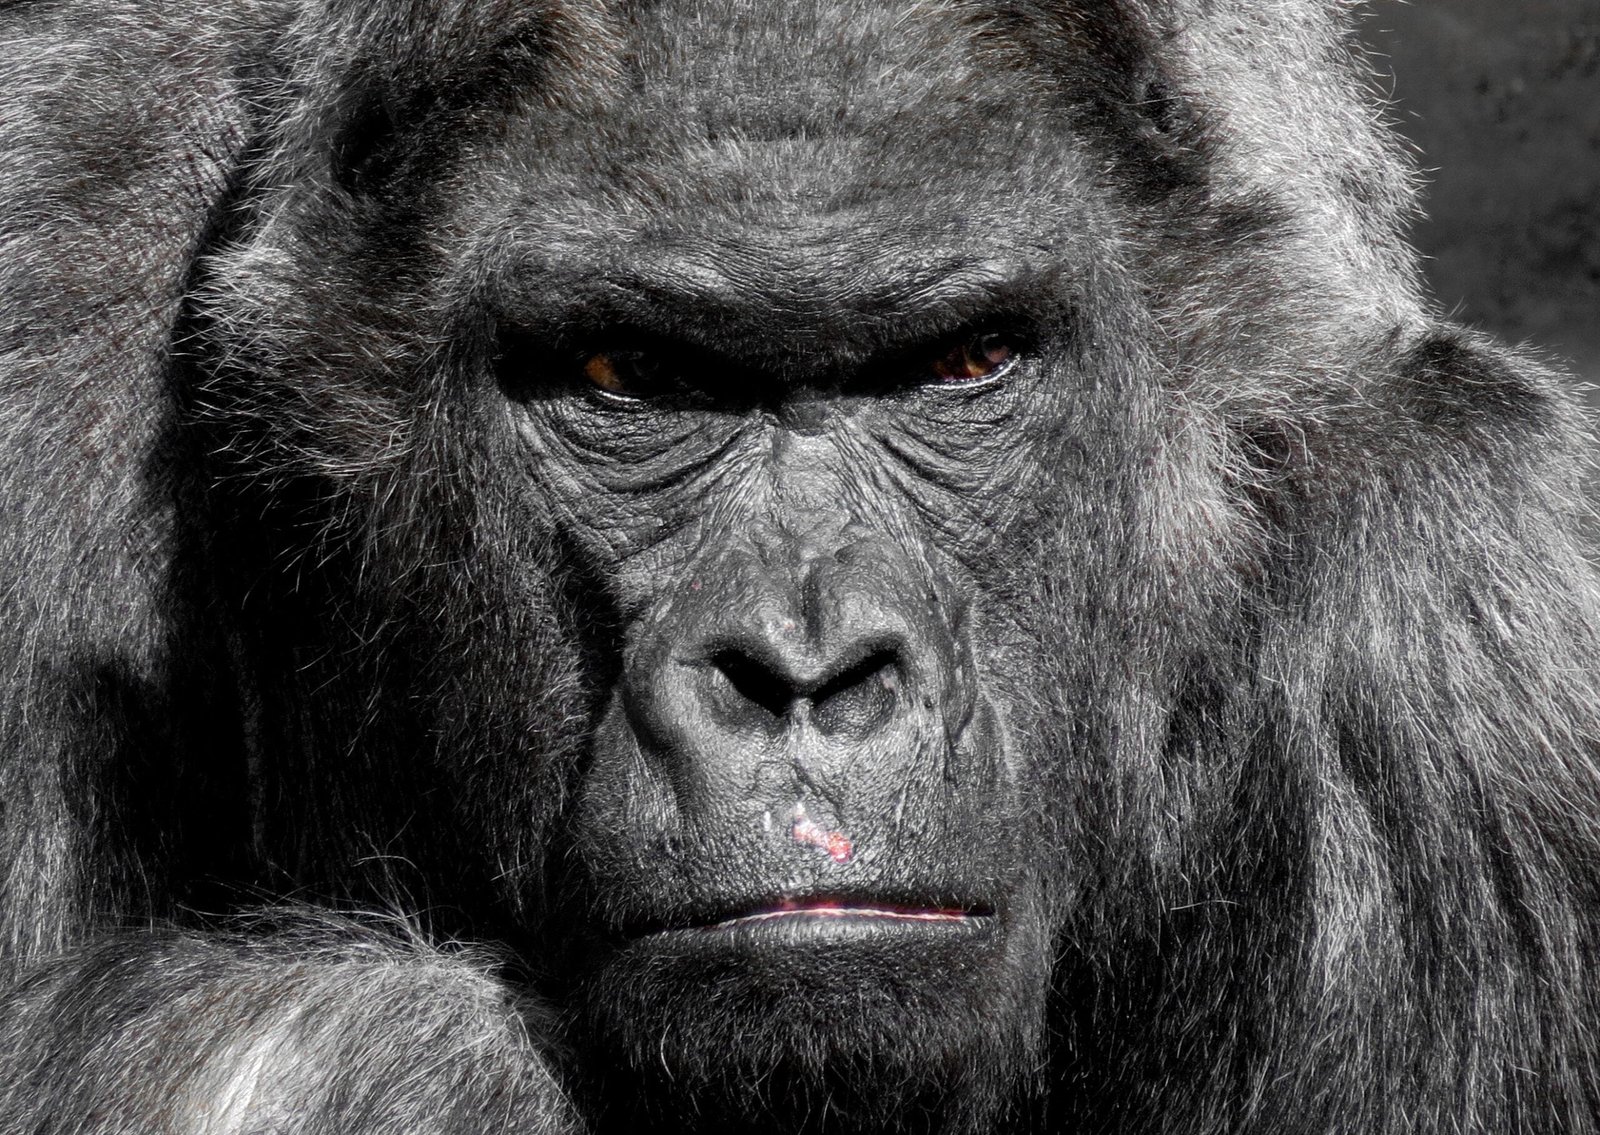 Photograph of a gorilla